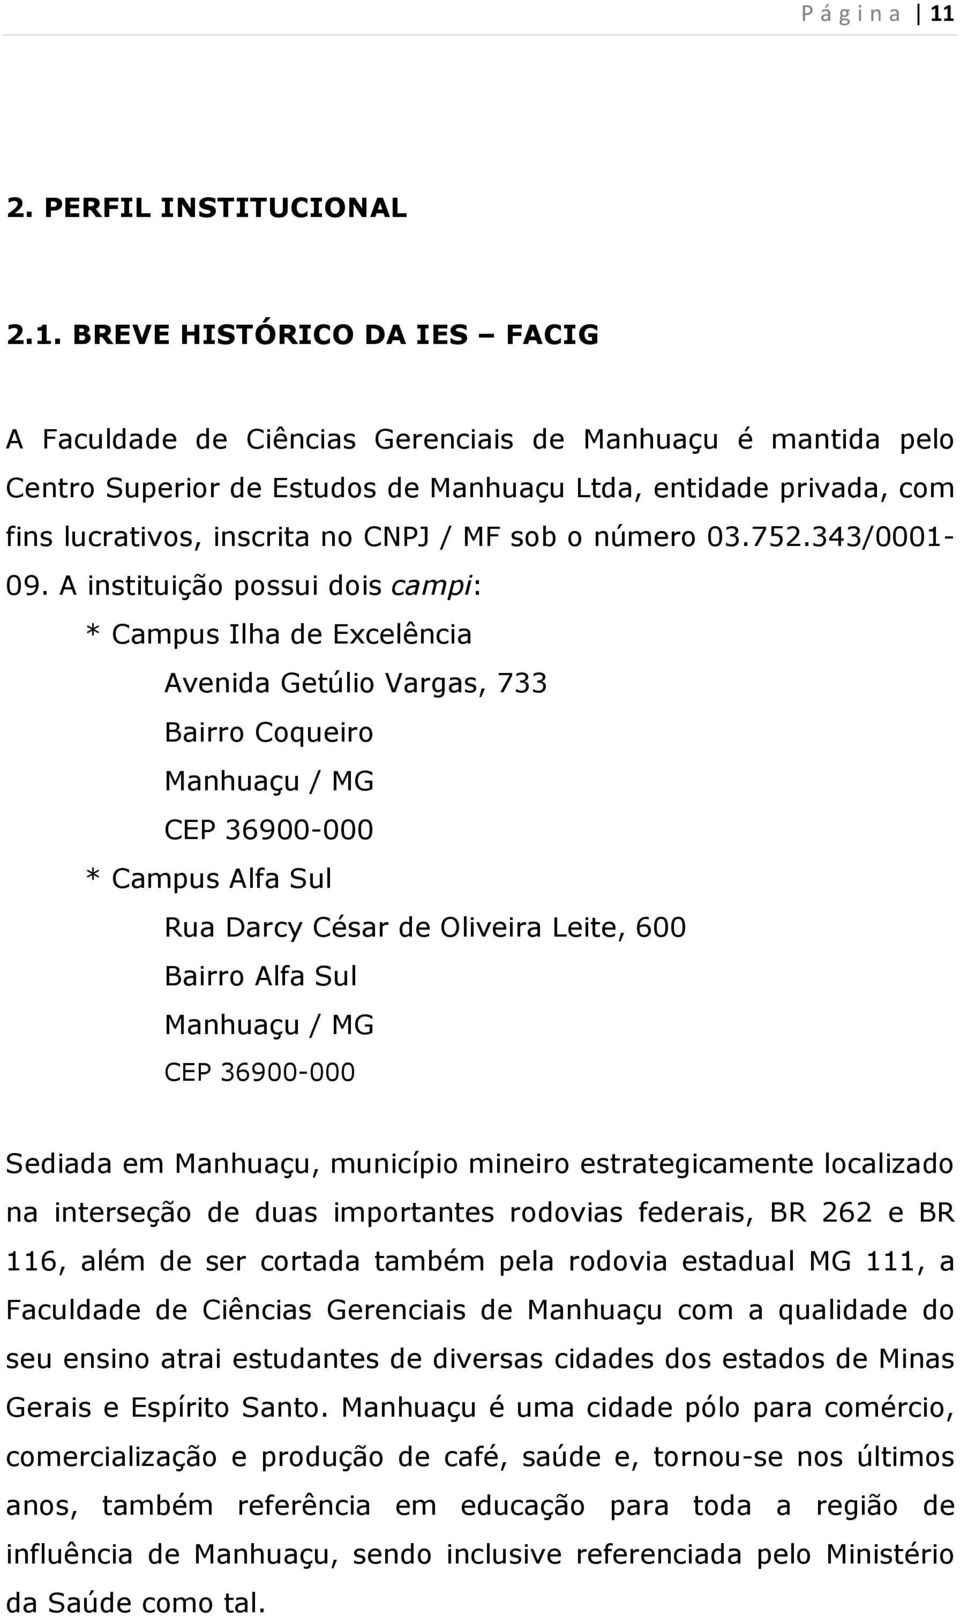 BREVE HISTÓRICO DA IES FACIG A Faculdade de Ciências Gerenciais de Manhuaçu é mantida pelo Centro Superior de Estudos de Manhuaçu Ltda, entidade privada, com fins lucrativos, inscrita no CNPJ / MF